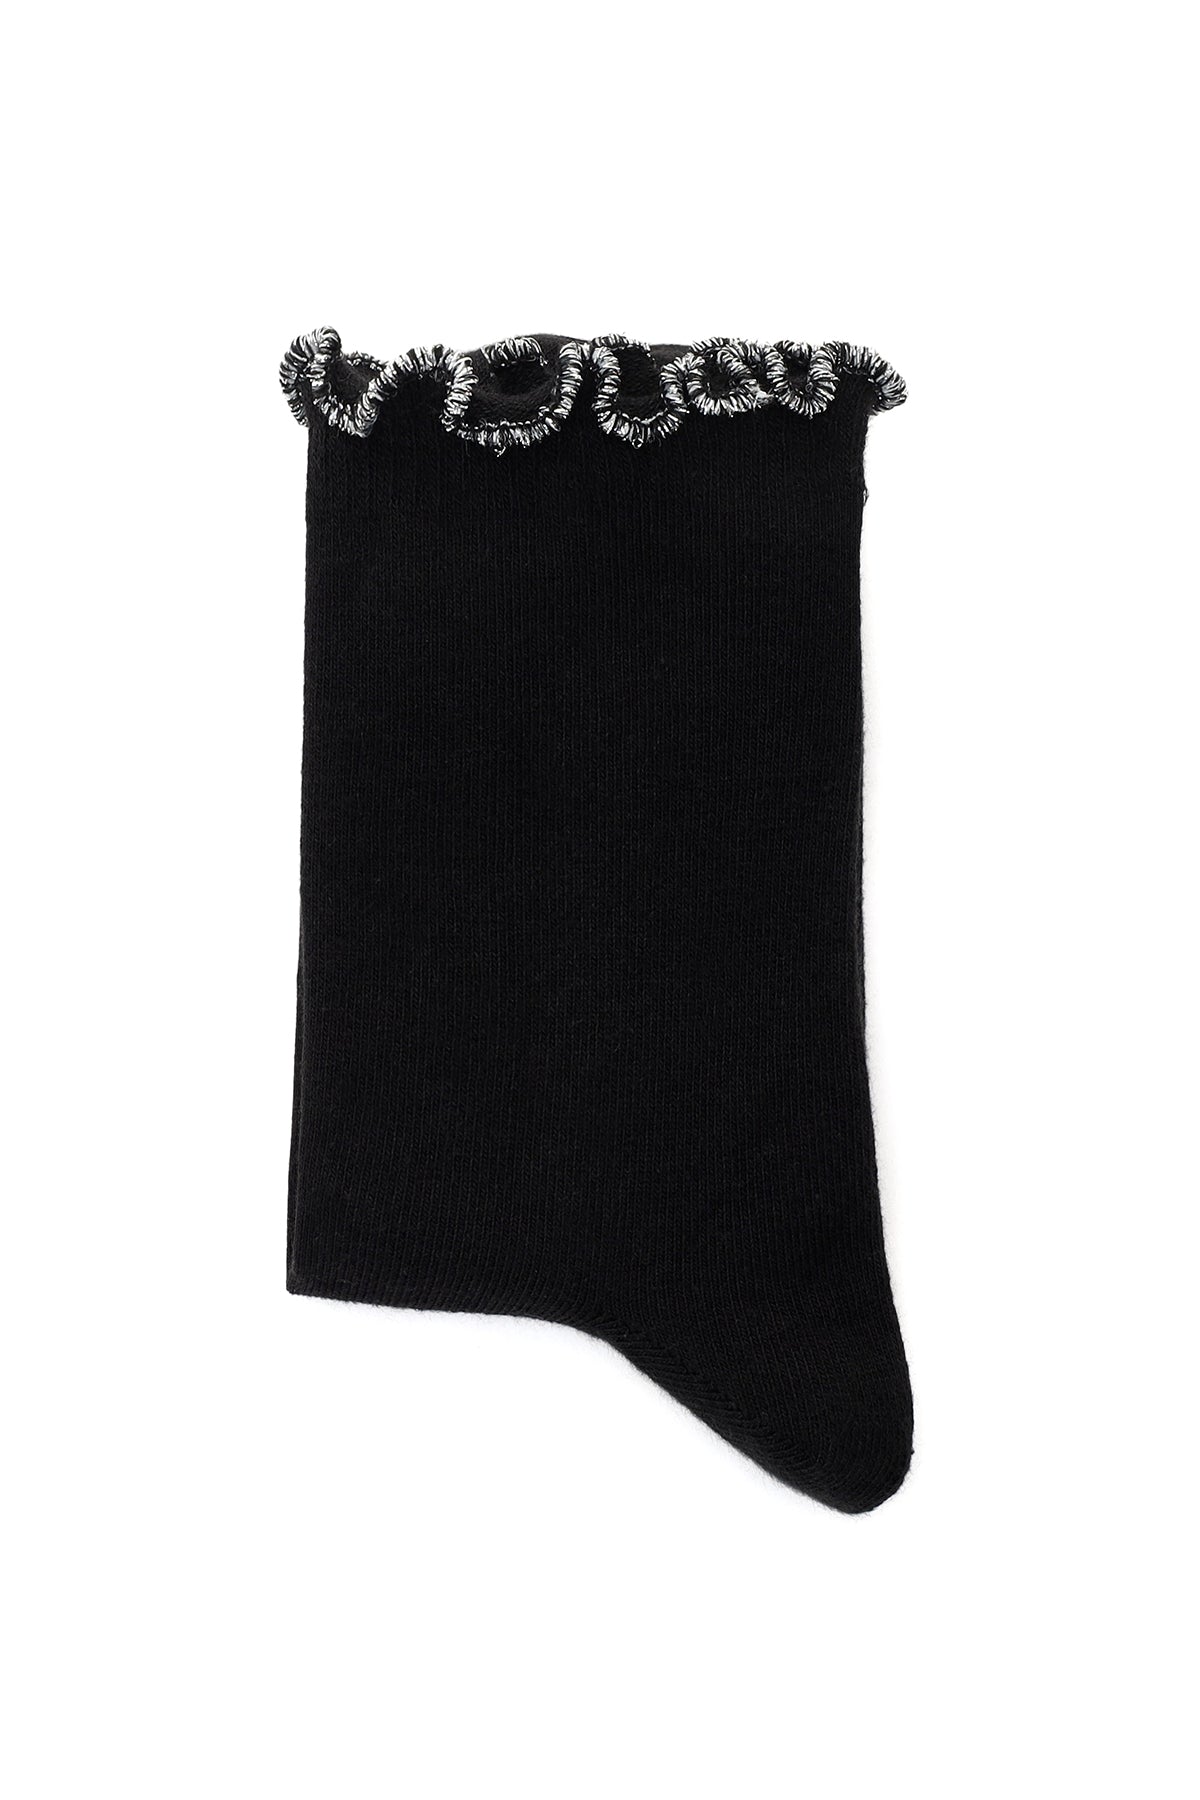 Kadın Siyah Gümüş Pamuk Çorap